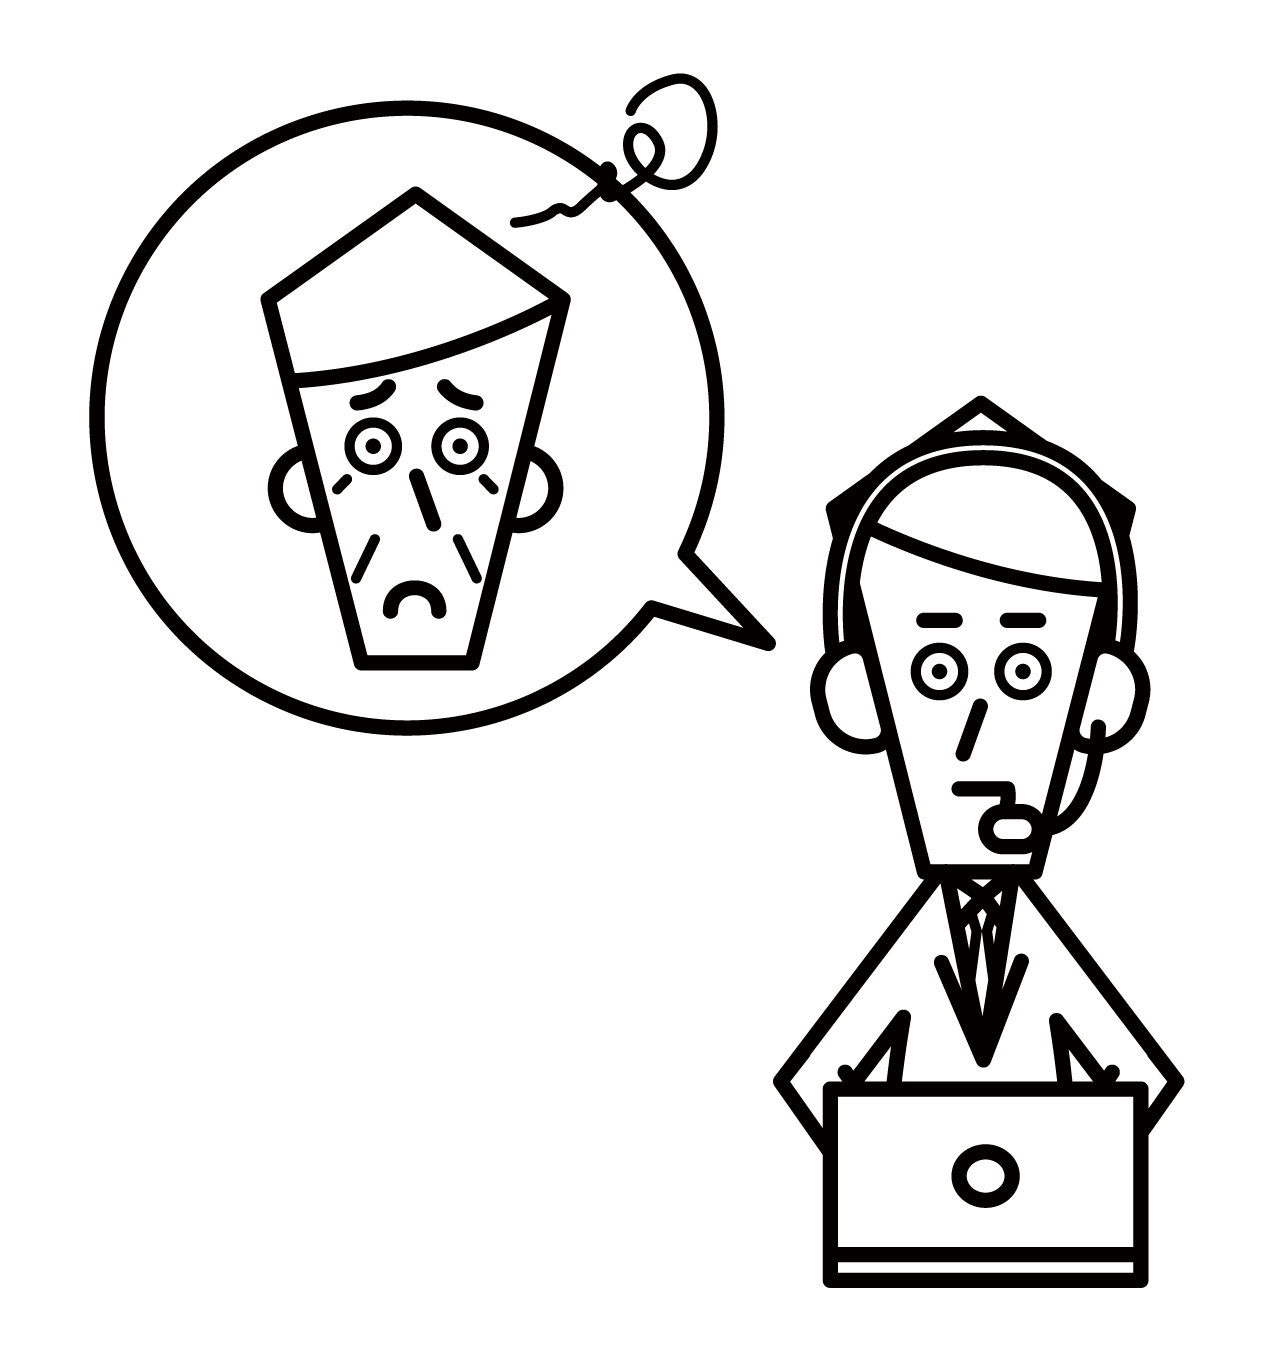 客戶支援電話接線員呼叫中心（男性）的插圖，提供禮貌的建議